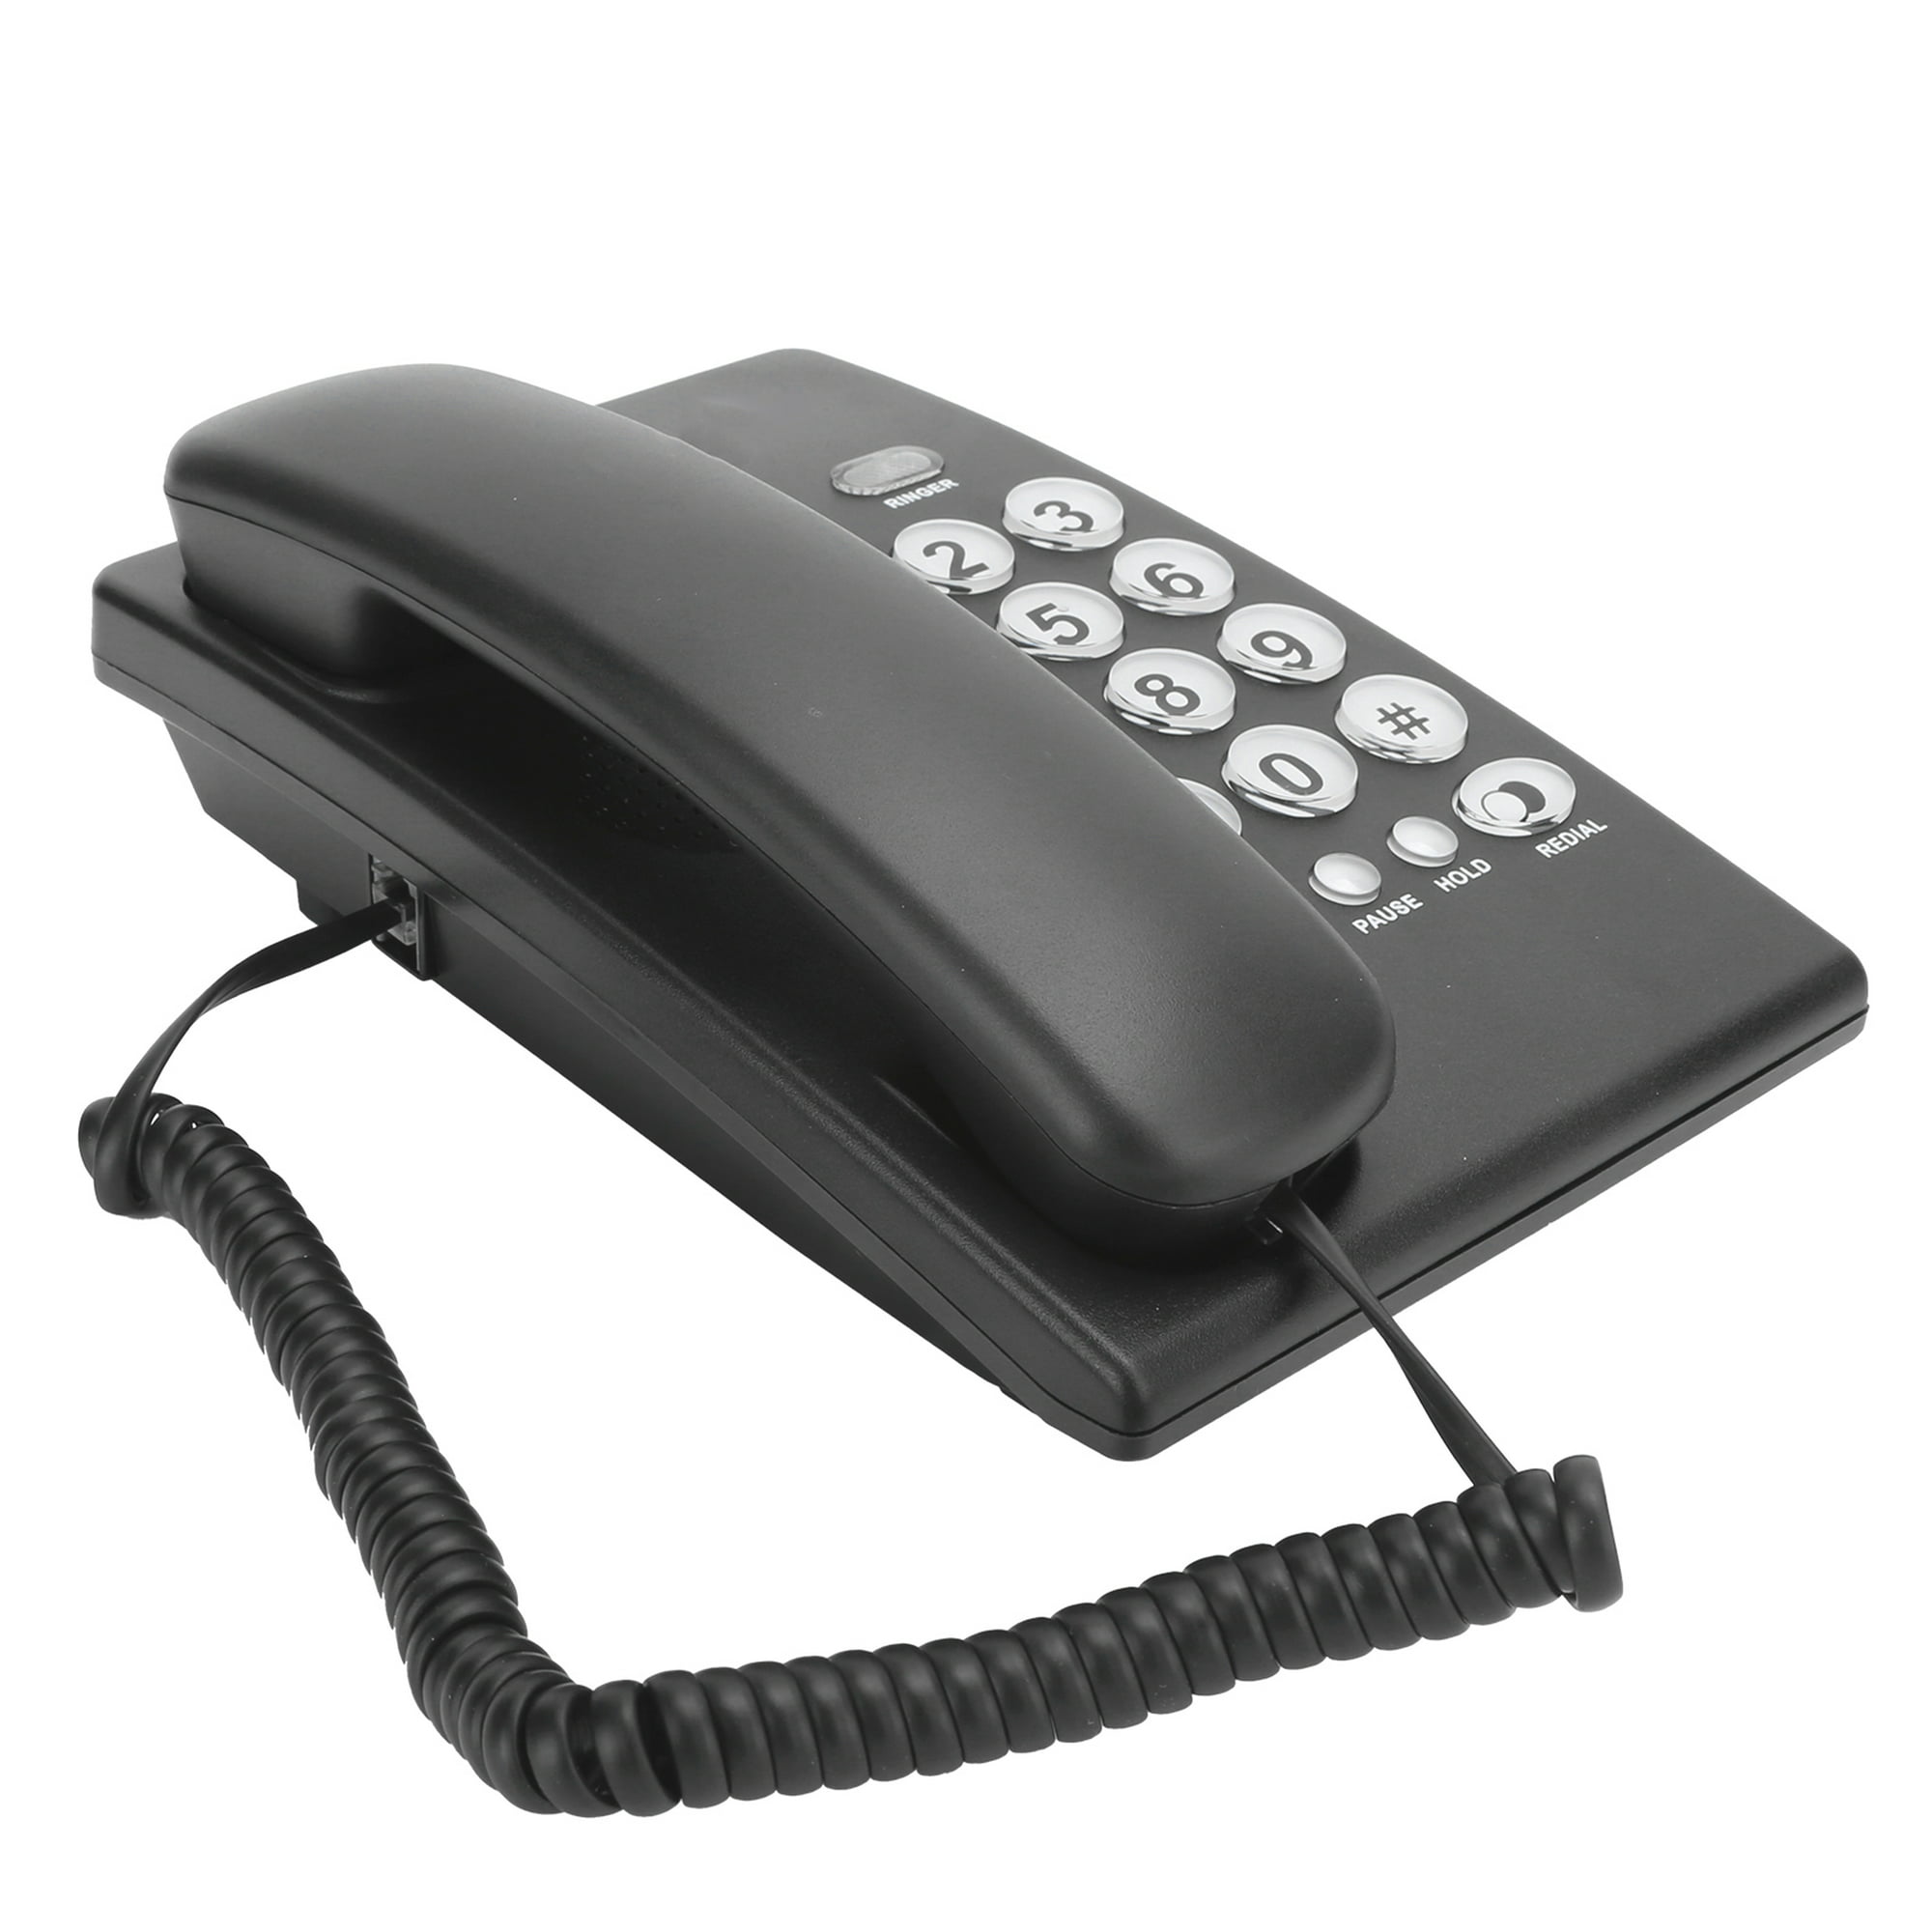 Teléfono alámbrico fijo anti-interferencia para casa, variedad de colores /  kx-t628 – Joinet